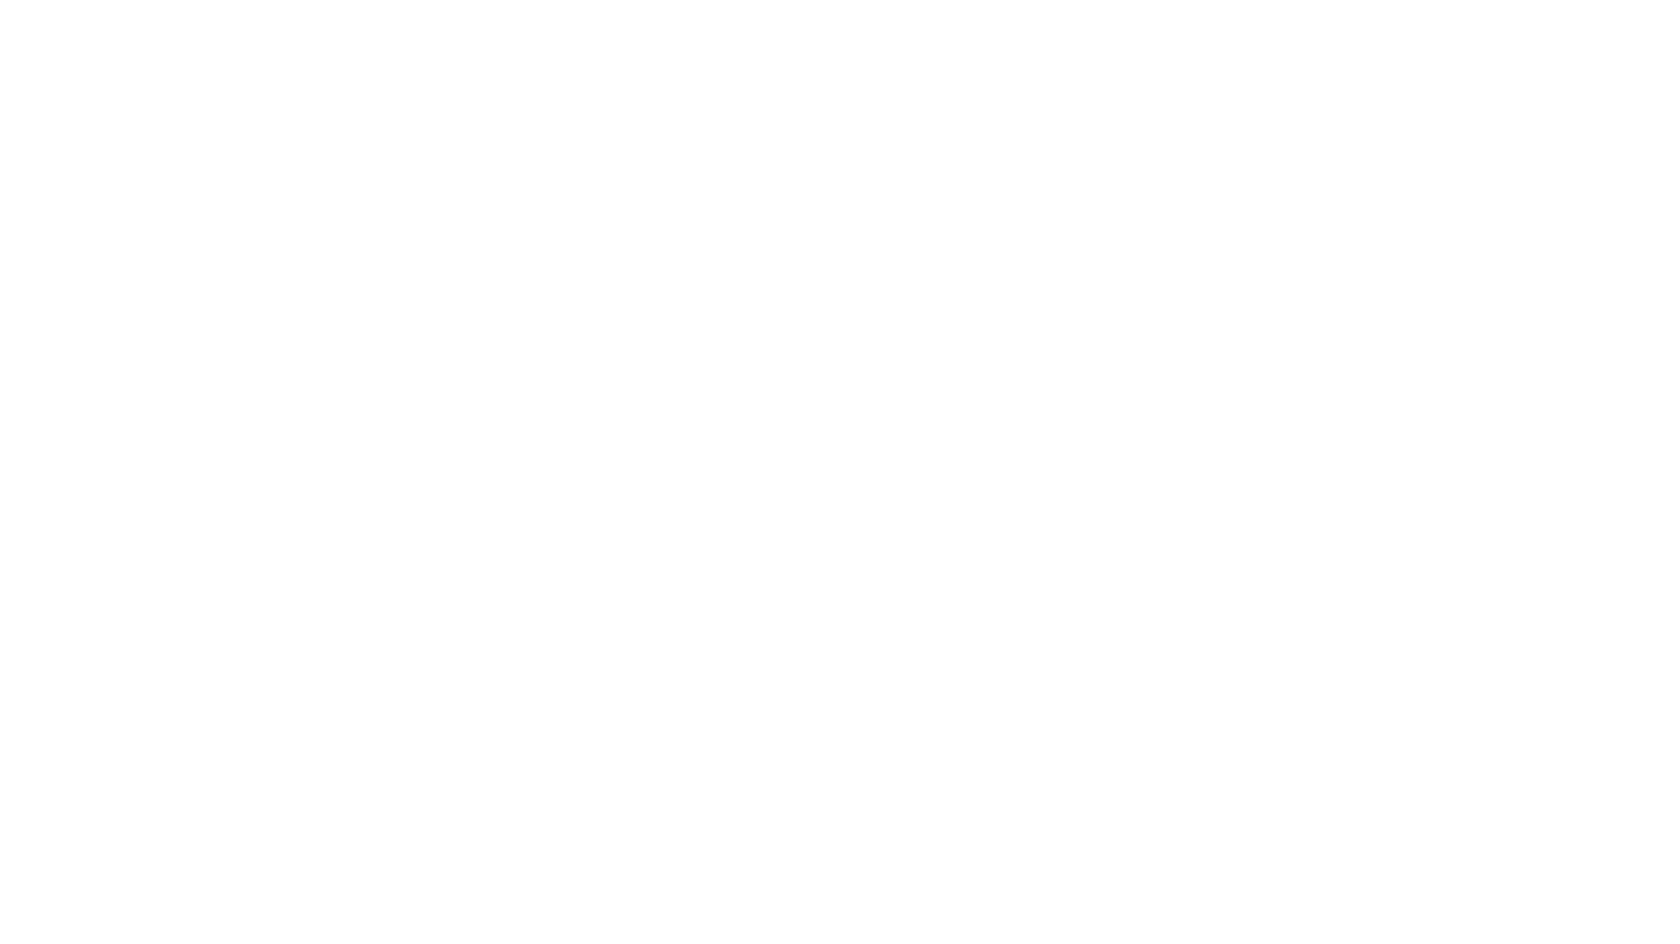 Сергей Рахманинов за роялем. Фото с дарственной надписью Владимиру Вильшау. Фото неизвестного автора. 1936 год